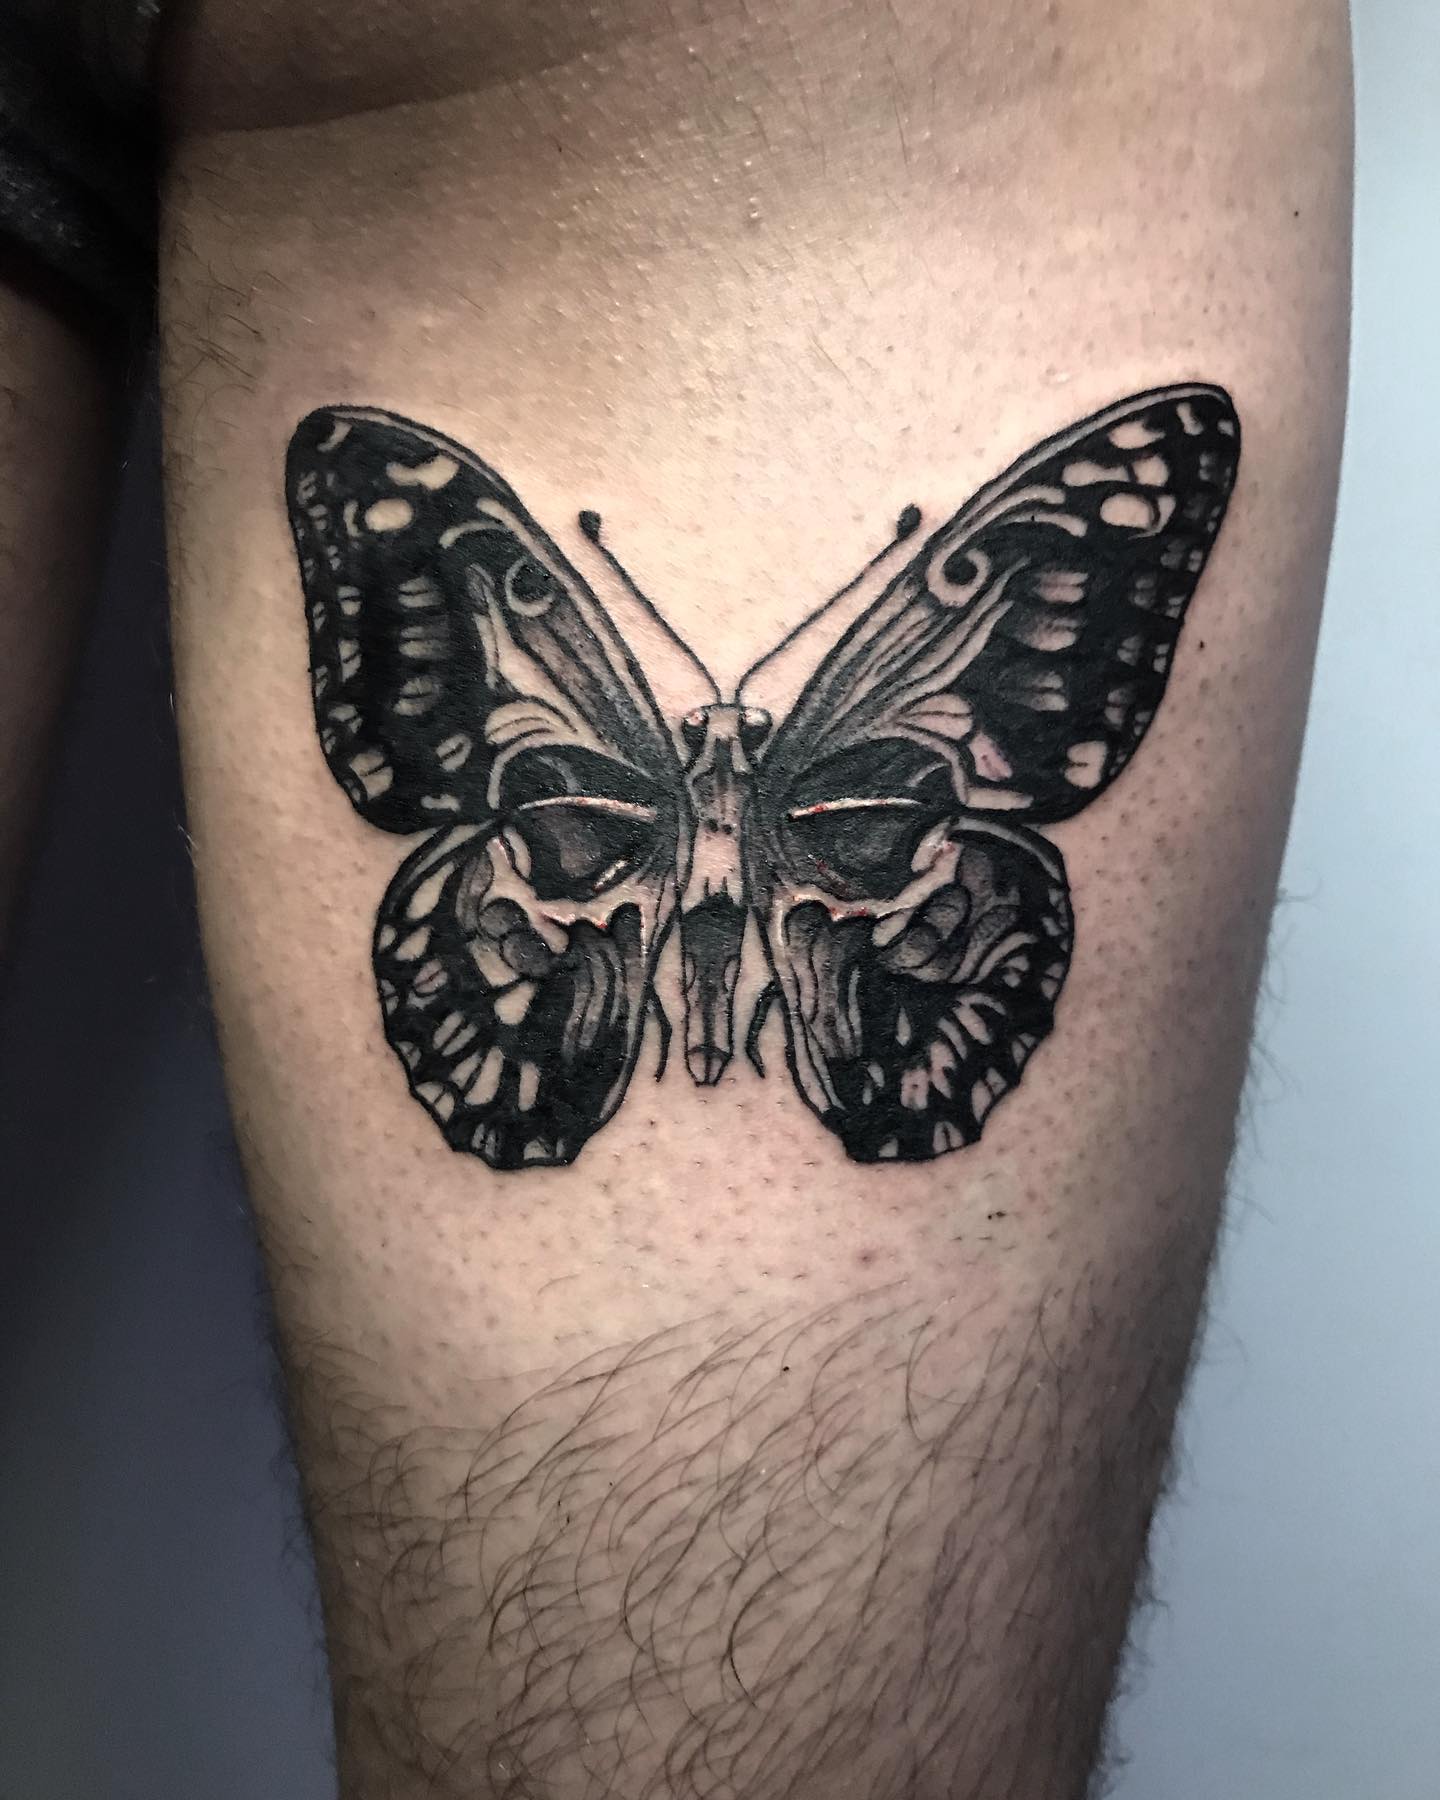 Tattoo uploaded by Marek Muska  Skull butterfly tatt on neck blackwork   Tattoodo